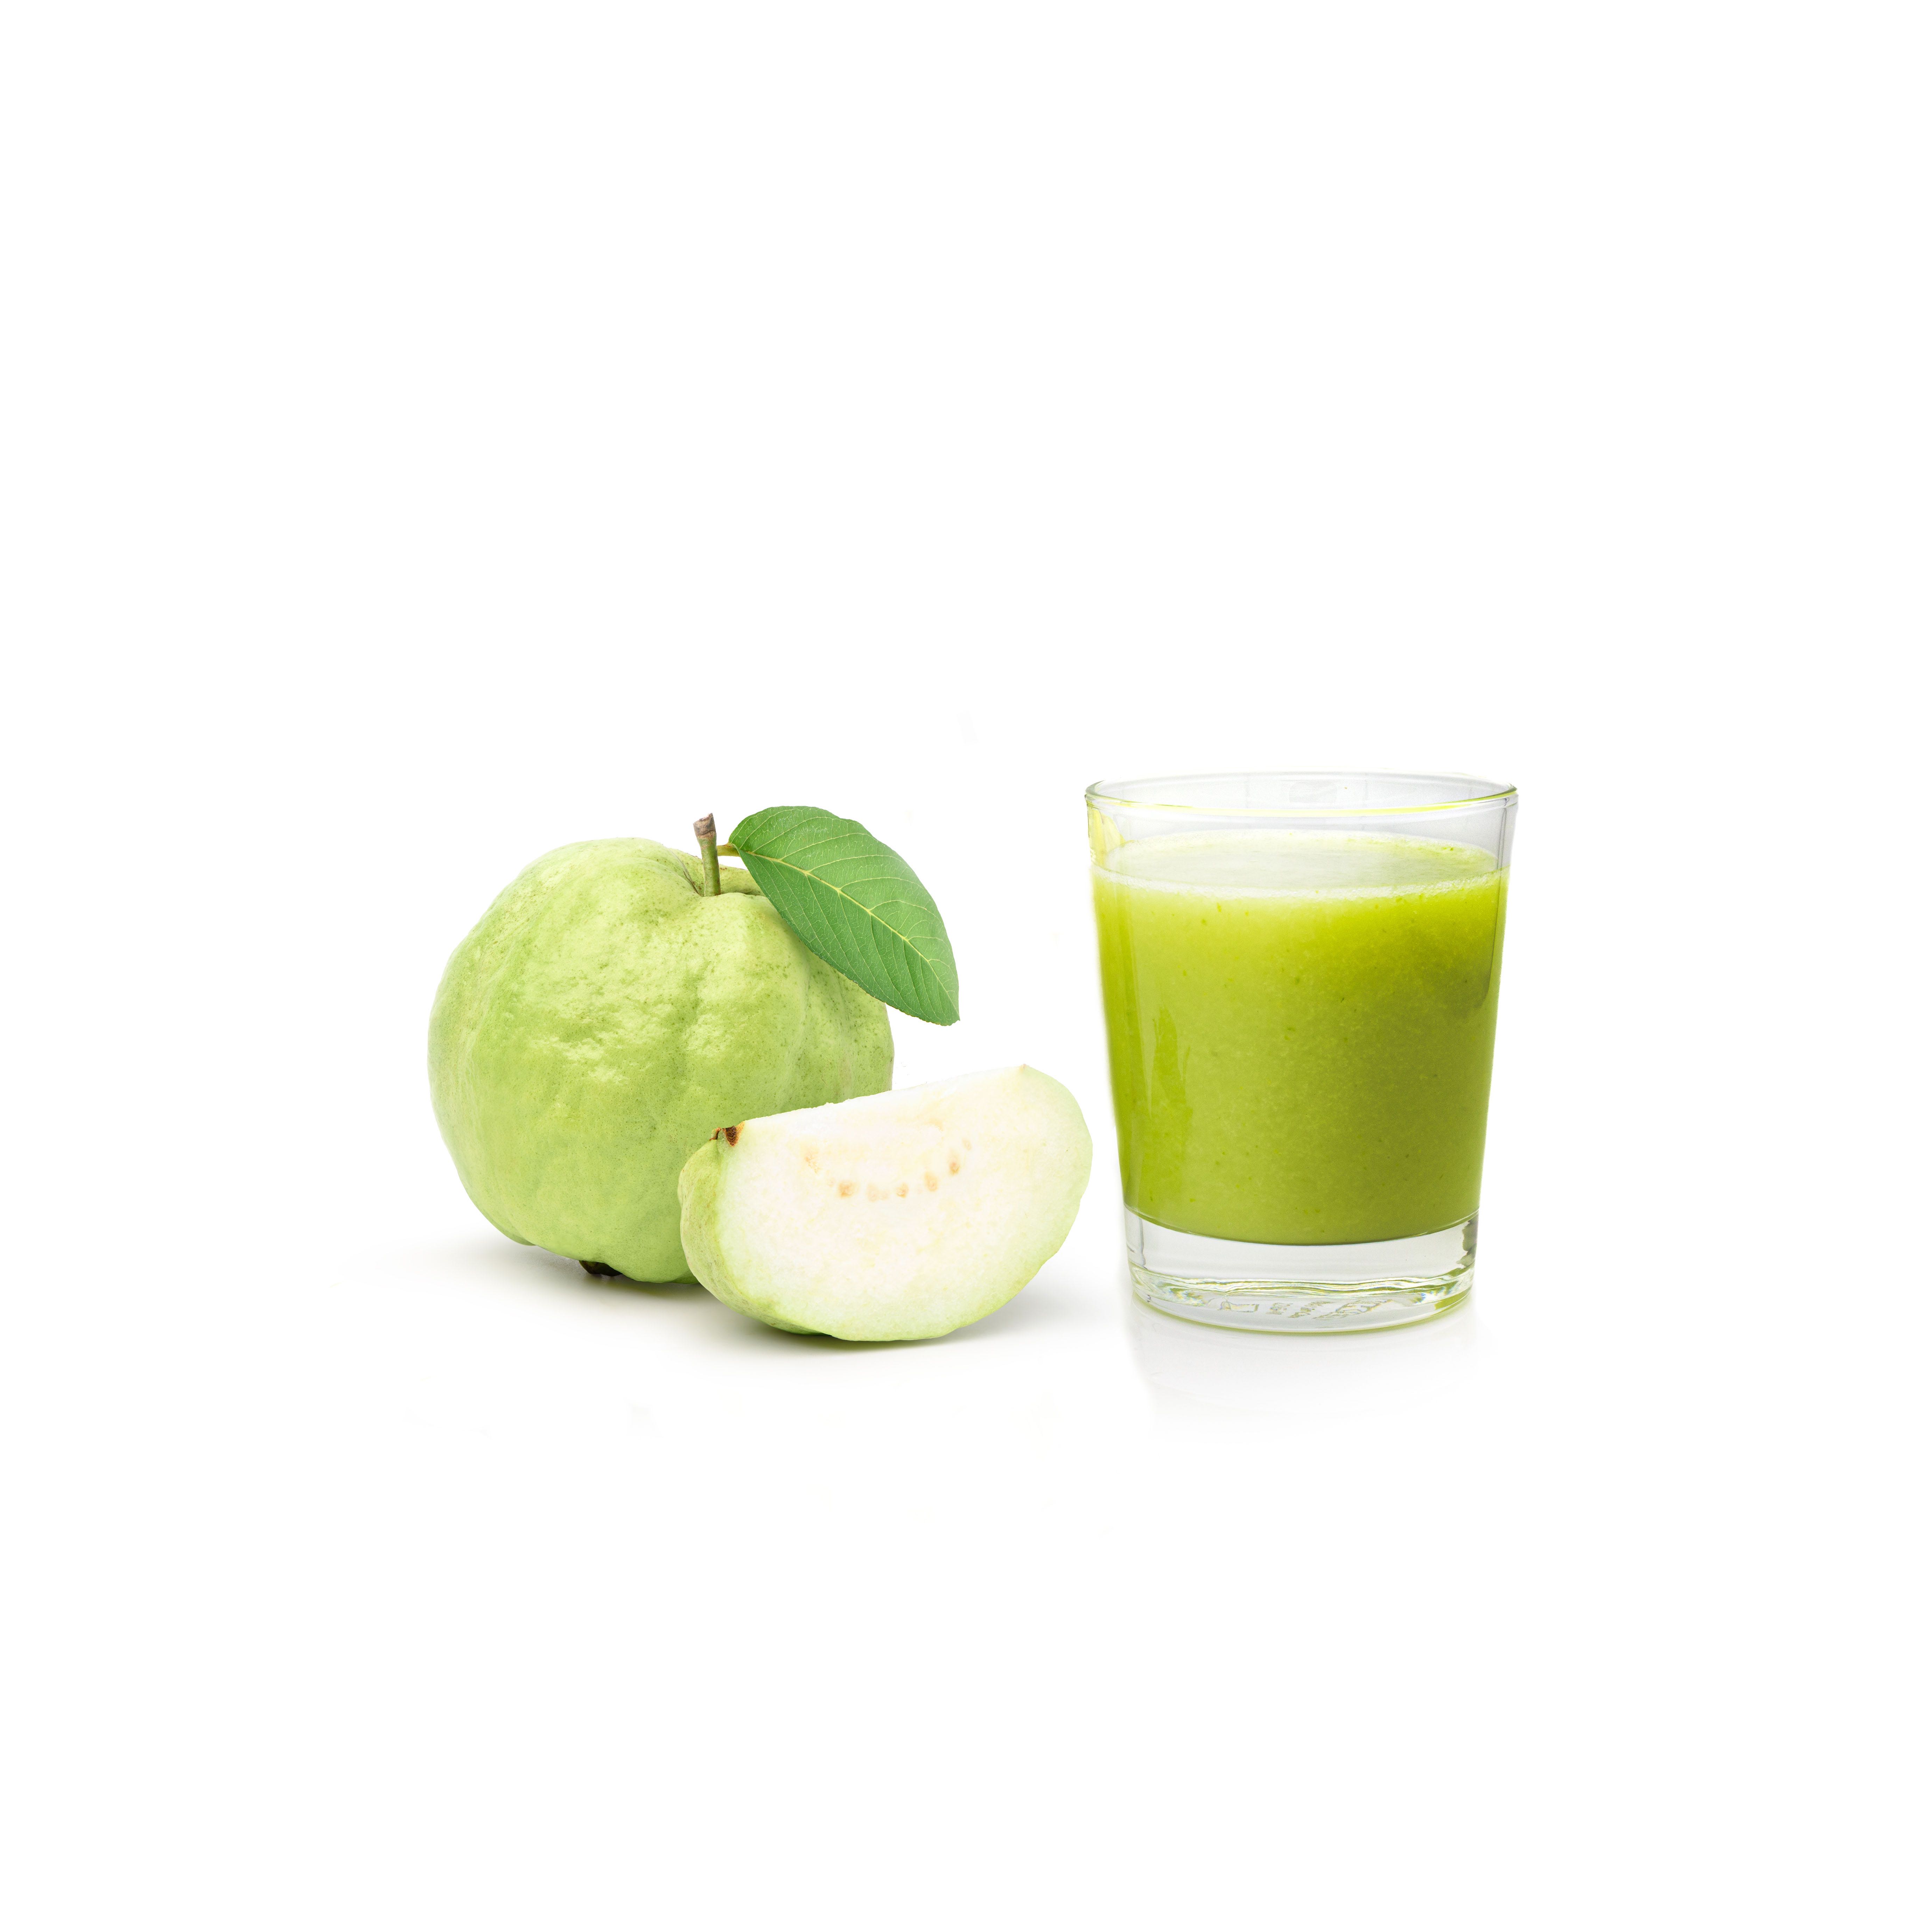 100% Guava juice  |  ฝรั่งสกัดเย็น ใช้ฝรั่งล้วน ไม่ใส่น้ำตาลและสารปรุงแต่ง